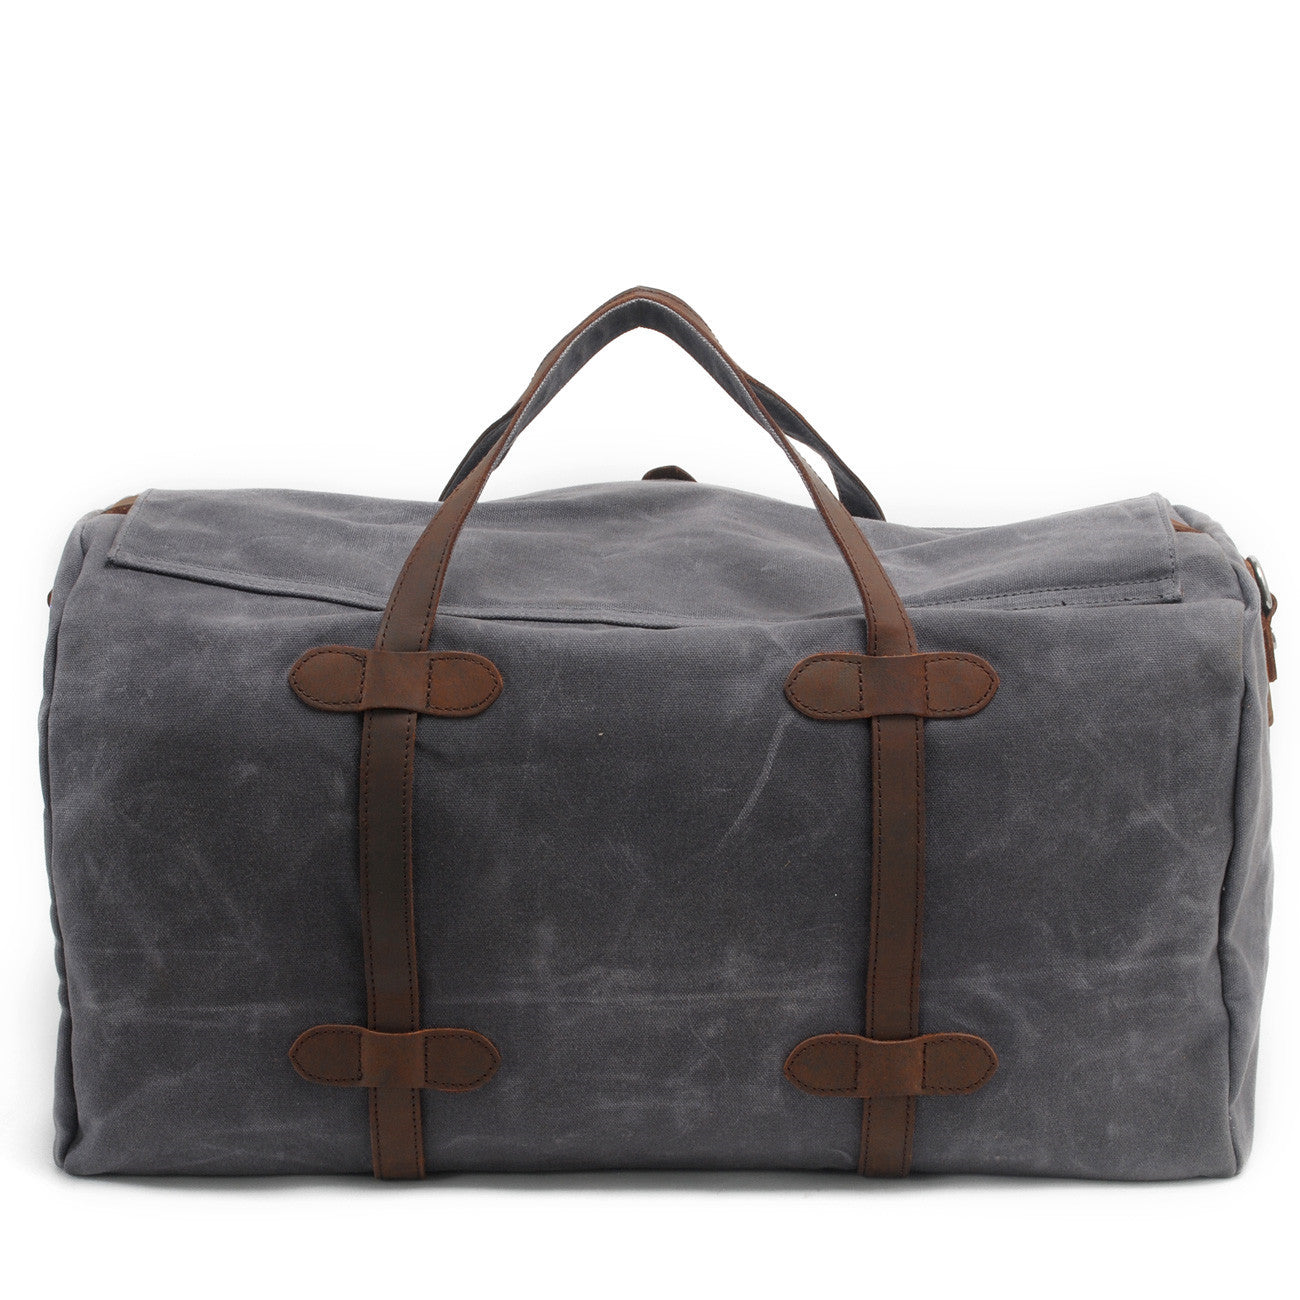 Leisure Waxed Leather Canvas Large Storage Traveling Duffle Bag 2023-Leather Canvas Bag-Khaki-Free Shipping Leatheretro